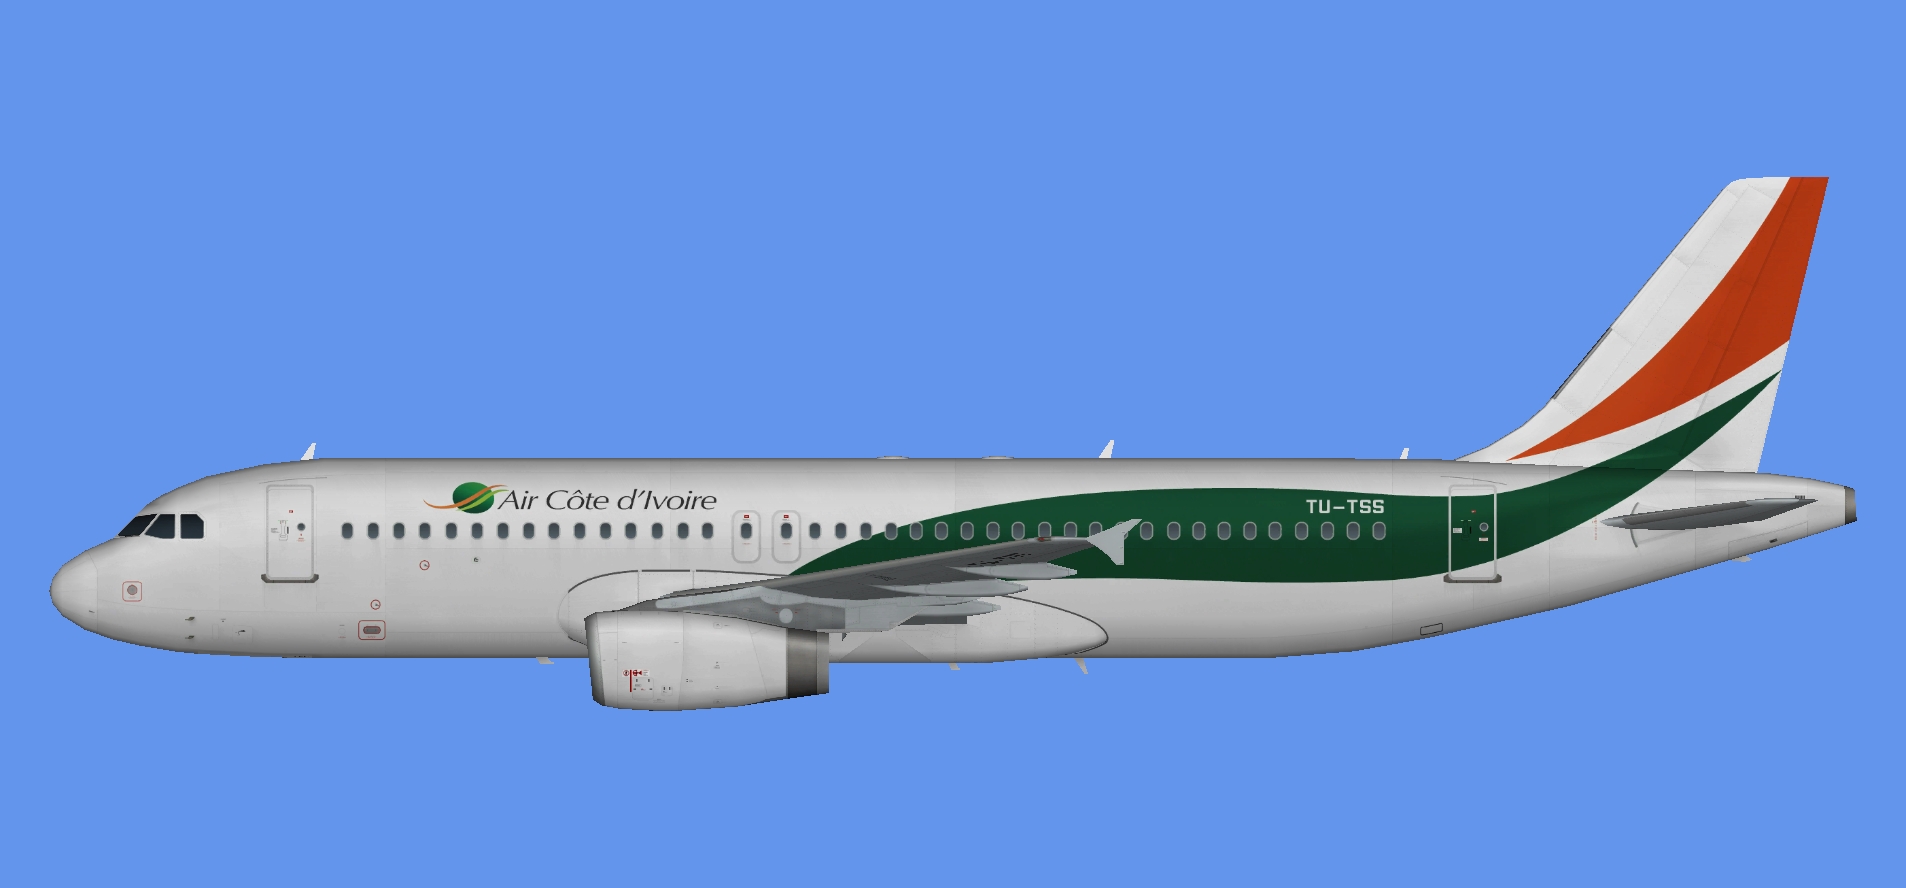 Air Cote d'Ivoire A320